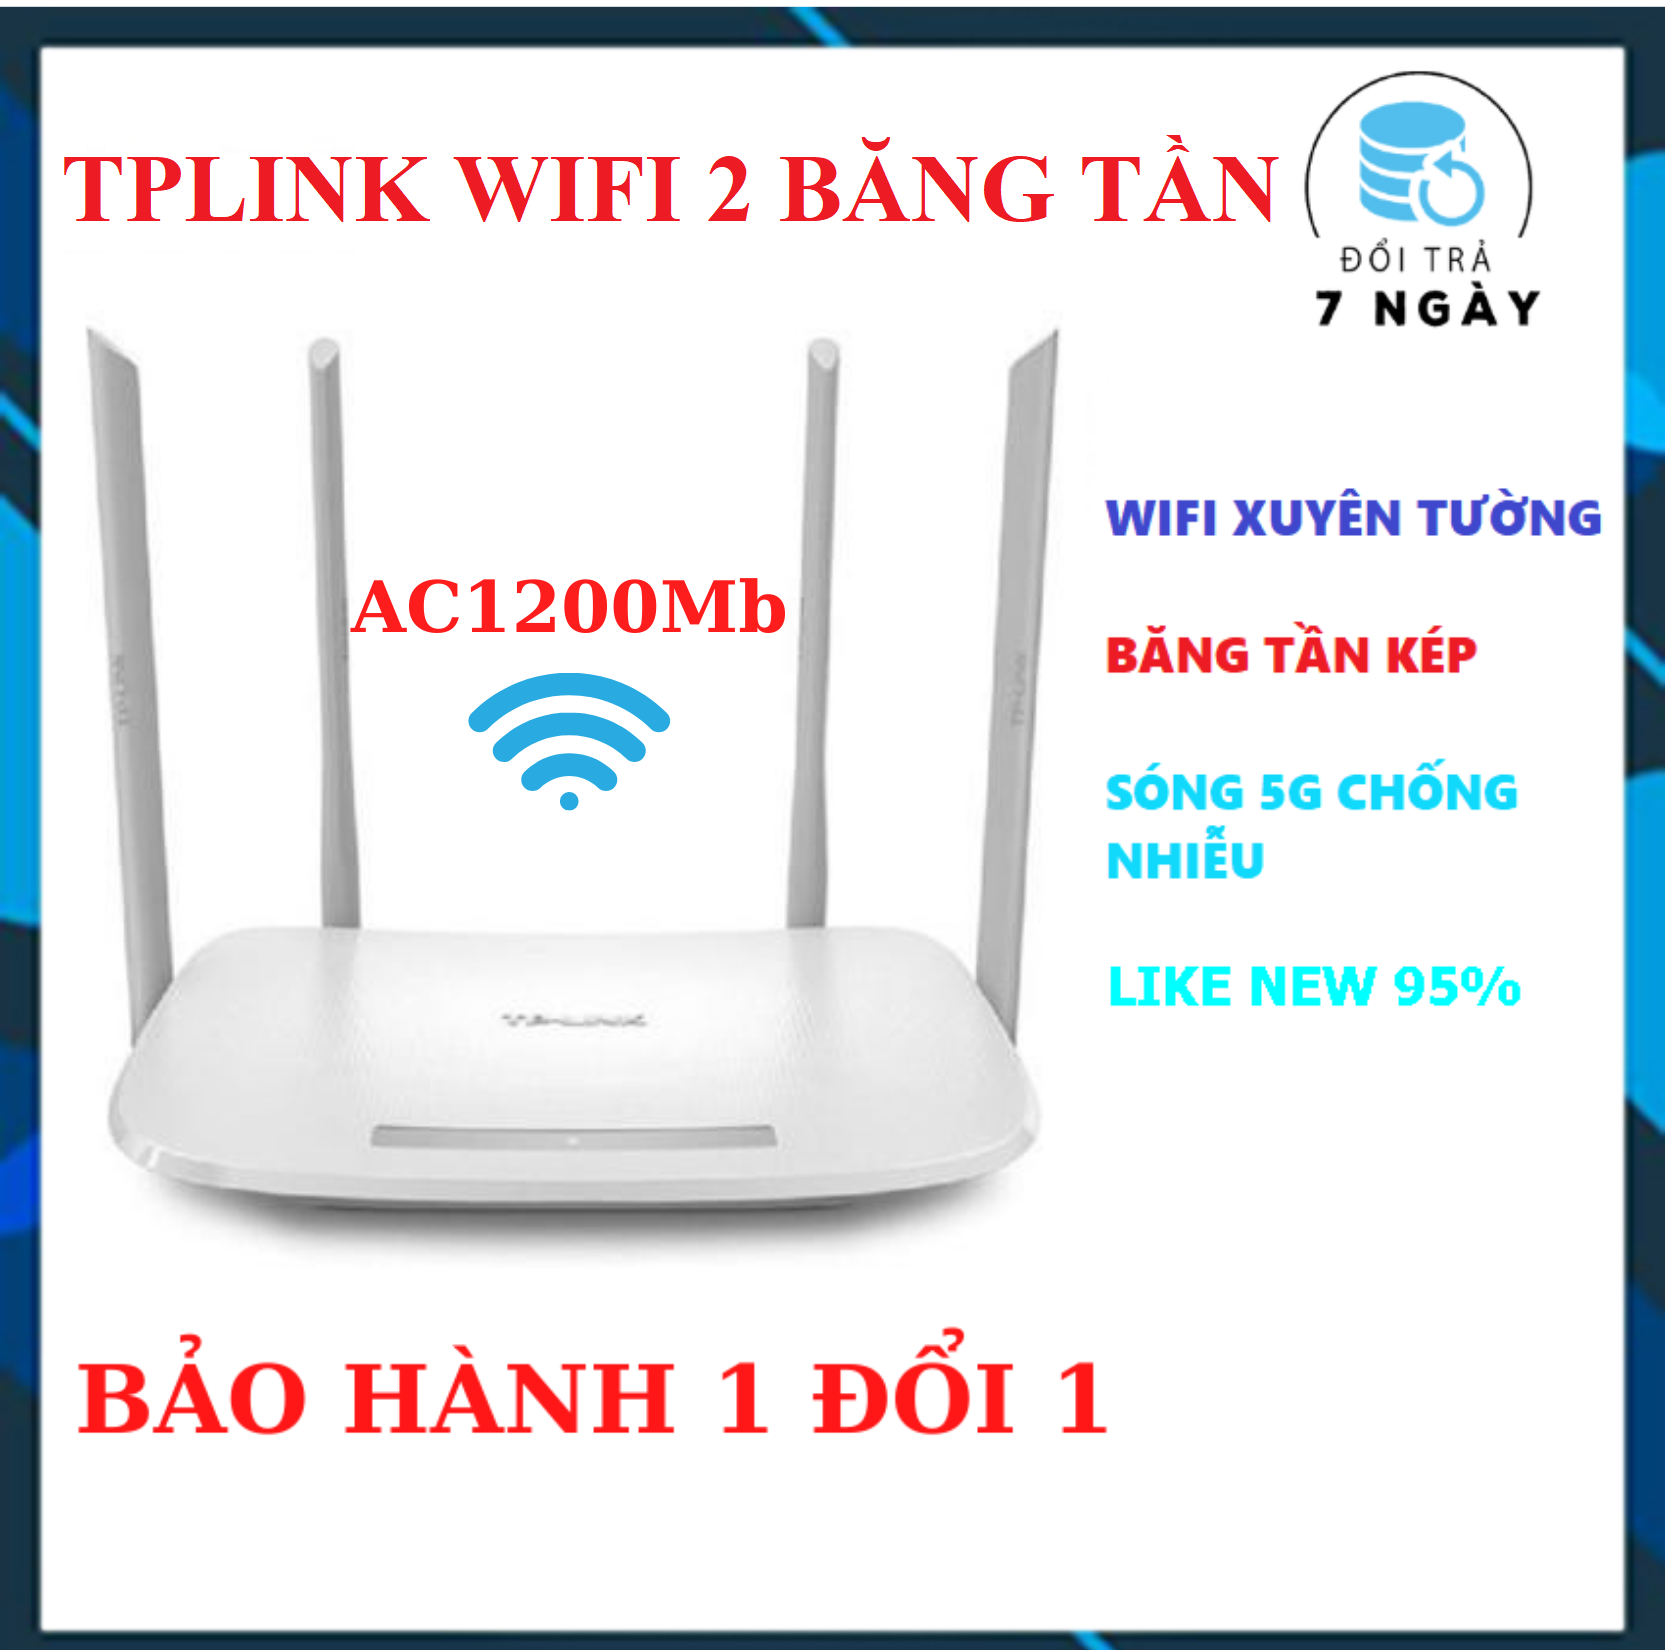 [TẶNG MGG 10K] Bộ phát wifi TPLink 4 râu 6300/5620 LIKE NEW 95% Sóng Xuyên Tường – Modem Wifi băng tần kép chuẩn AC 1200 Mbps | Router wifi 2 băng tần sóng 5G – USED